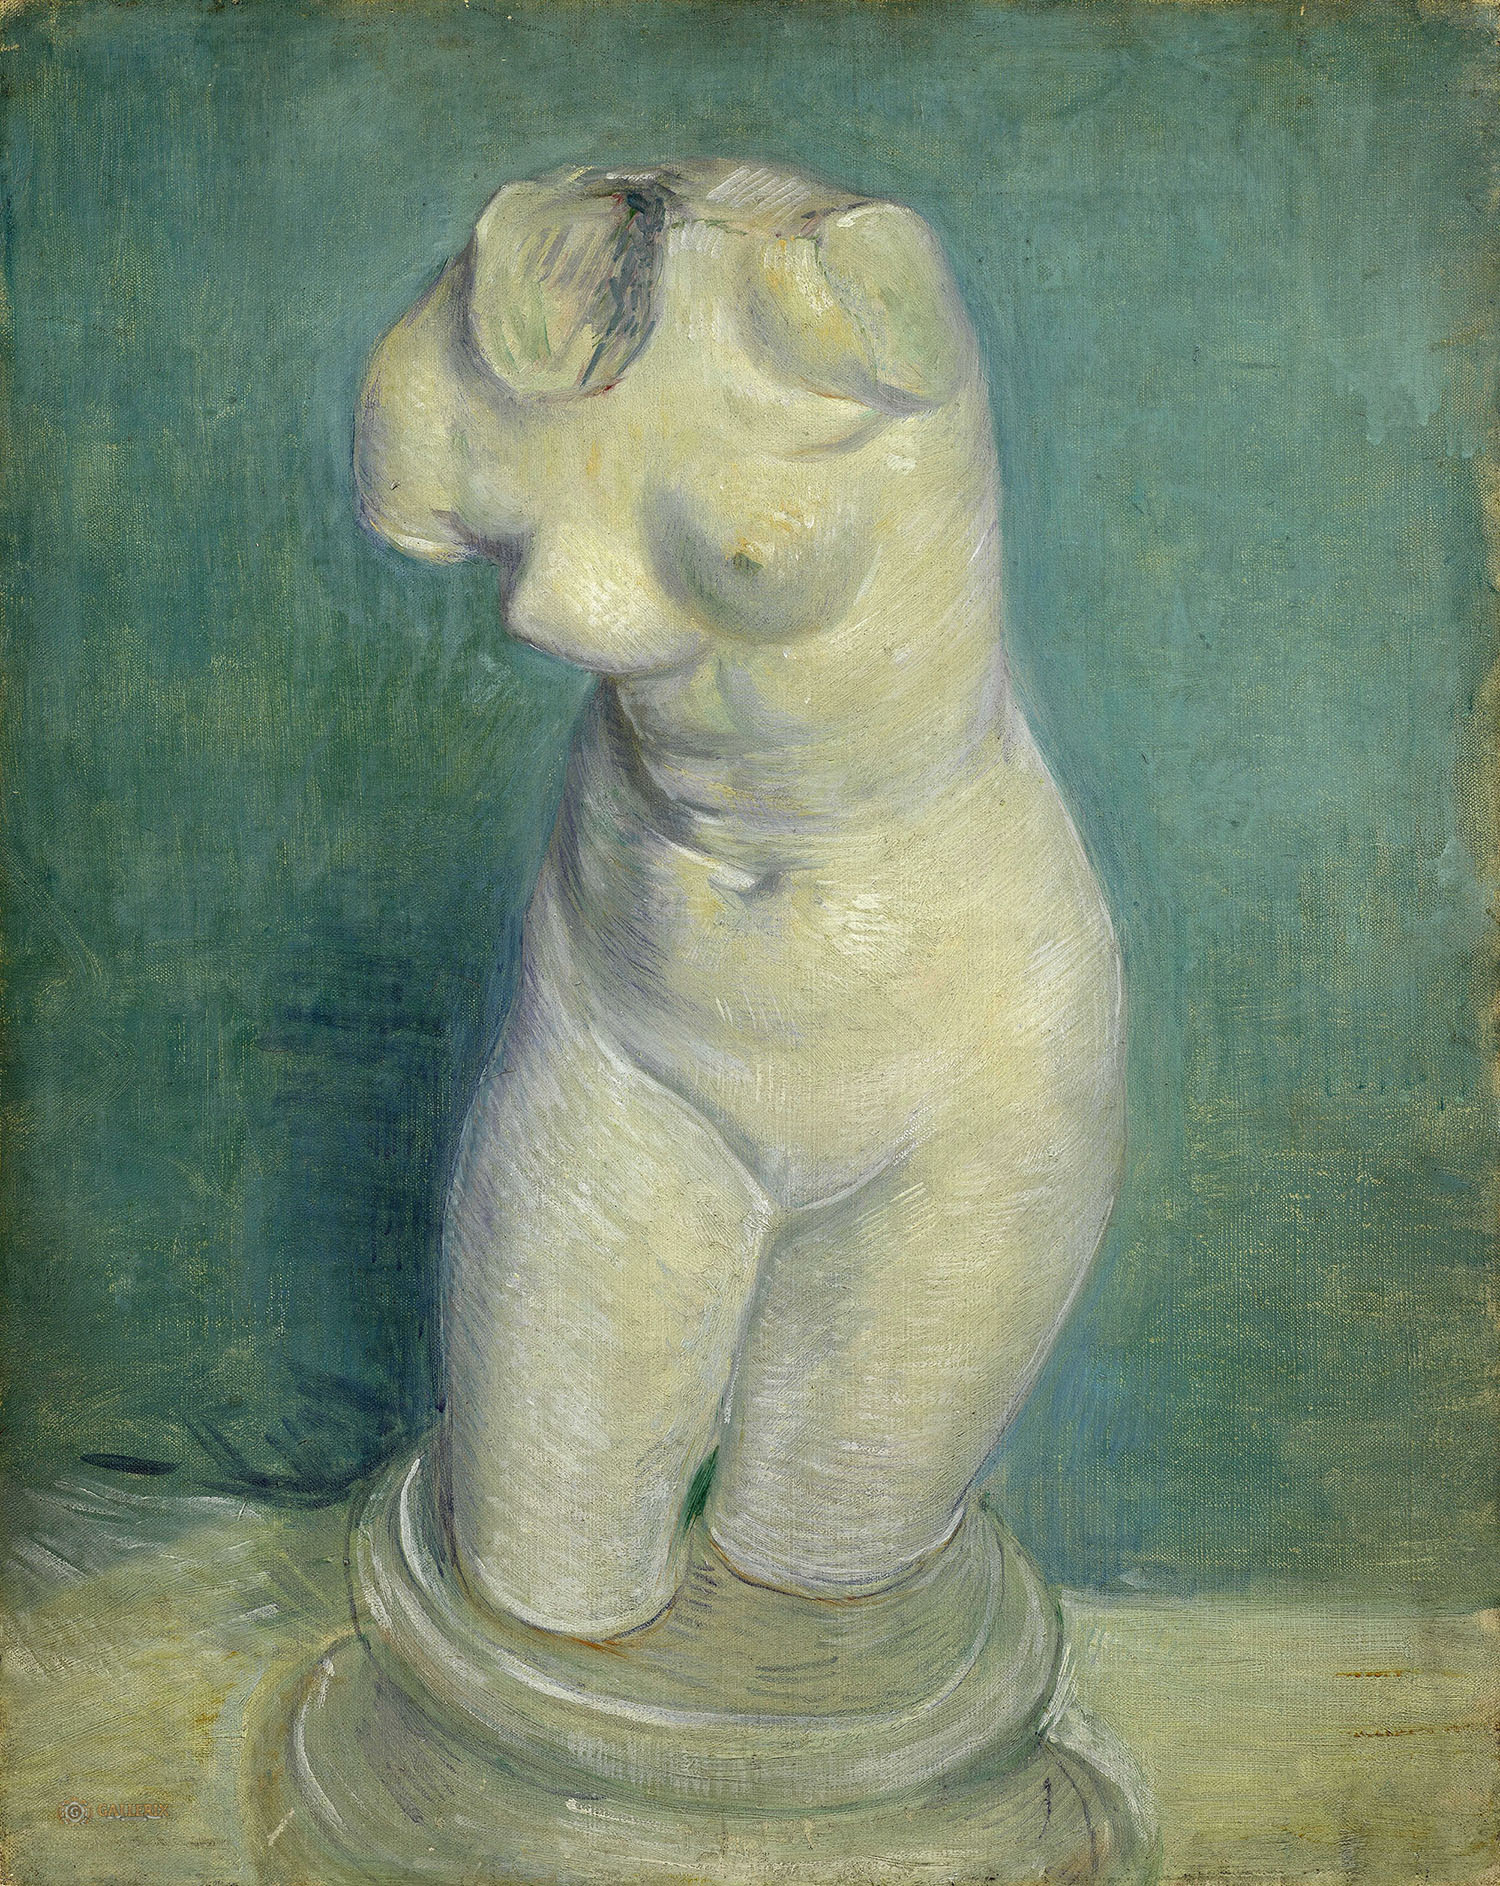 Винсент Ван Гог. "Гипсовый женский торс". 1886. Музей Ван Гога, амстердам.